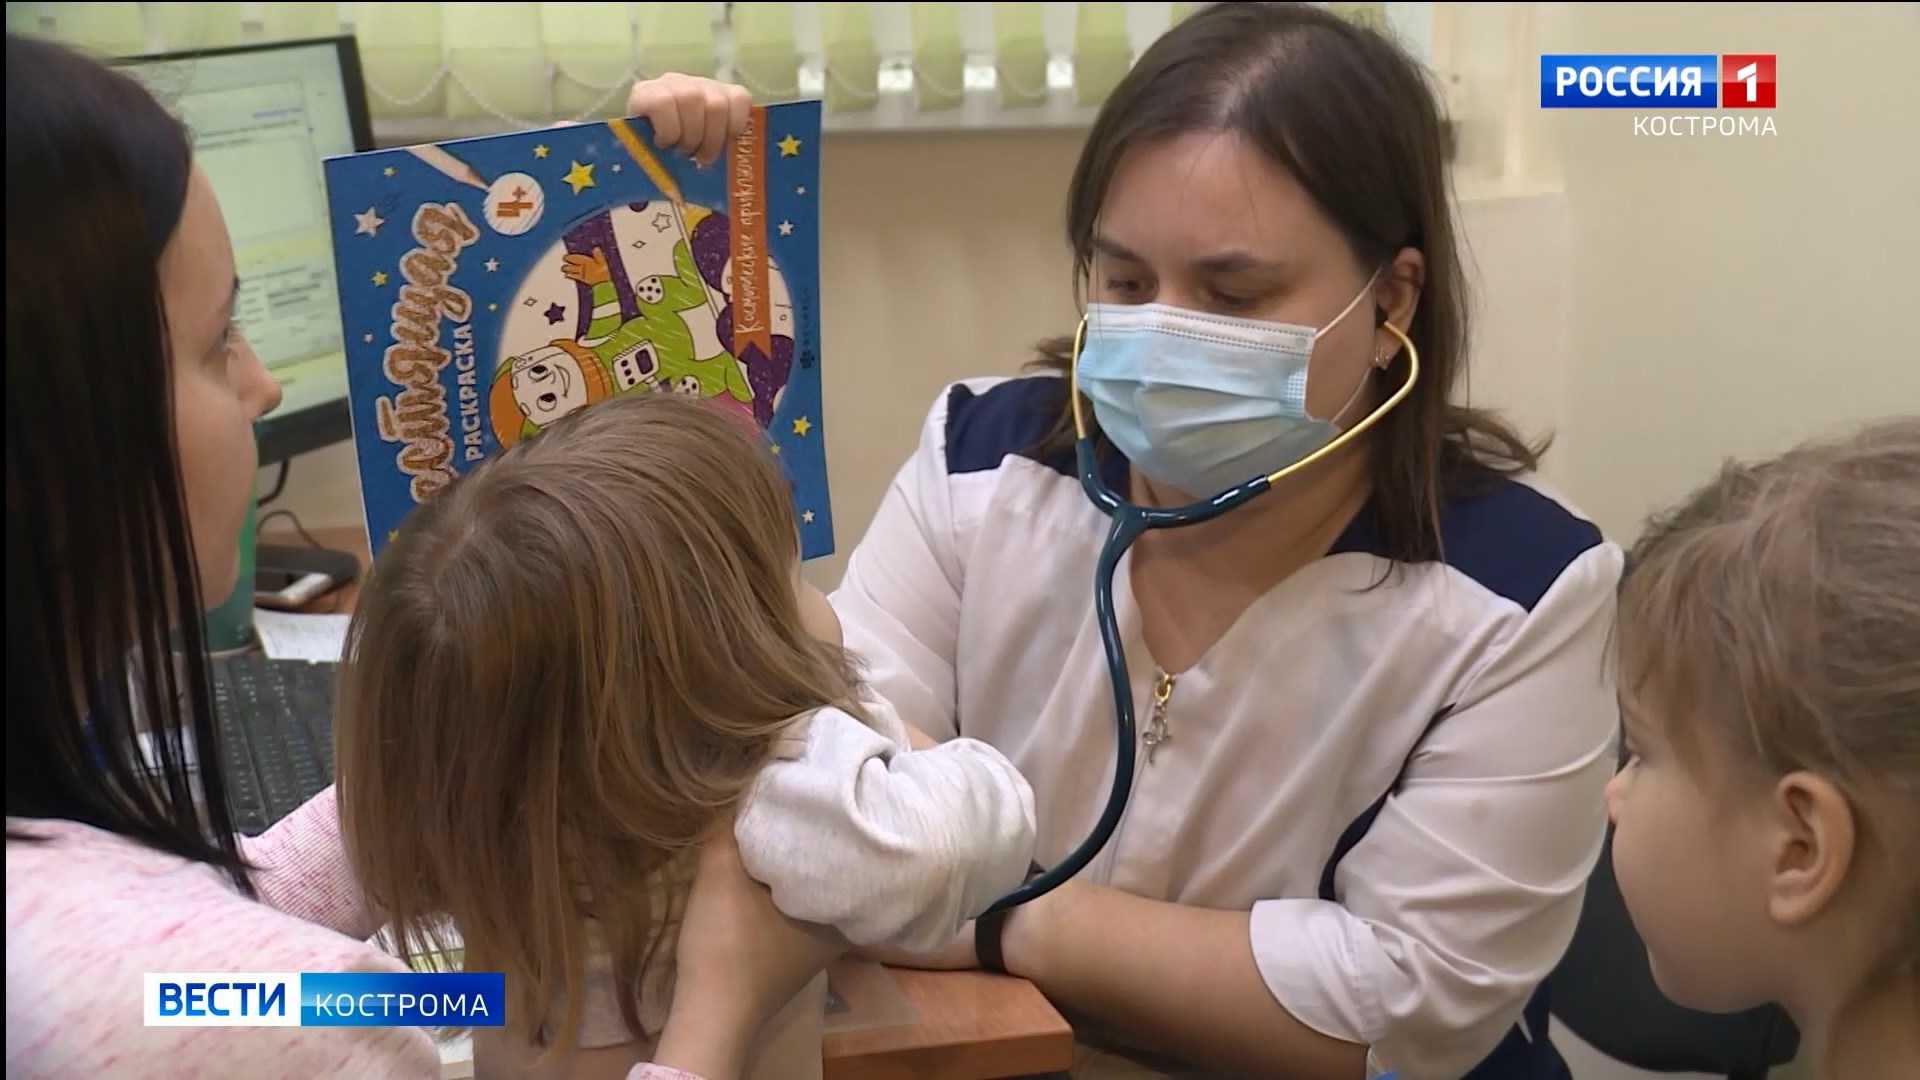 Полегчало: медики отмечают спад детской заболеваемости в Костроме